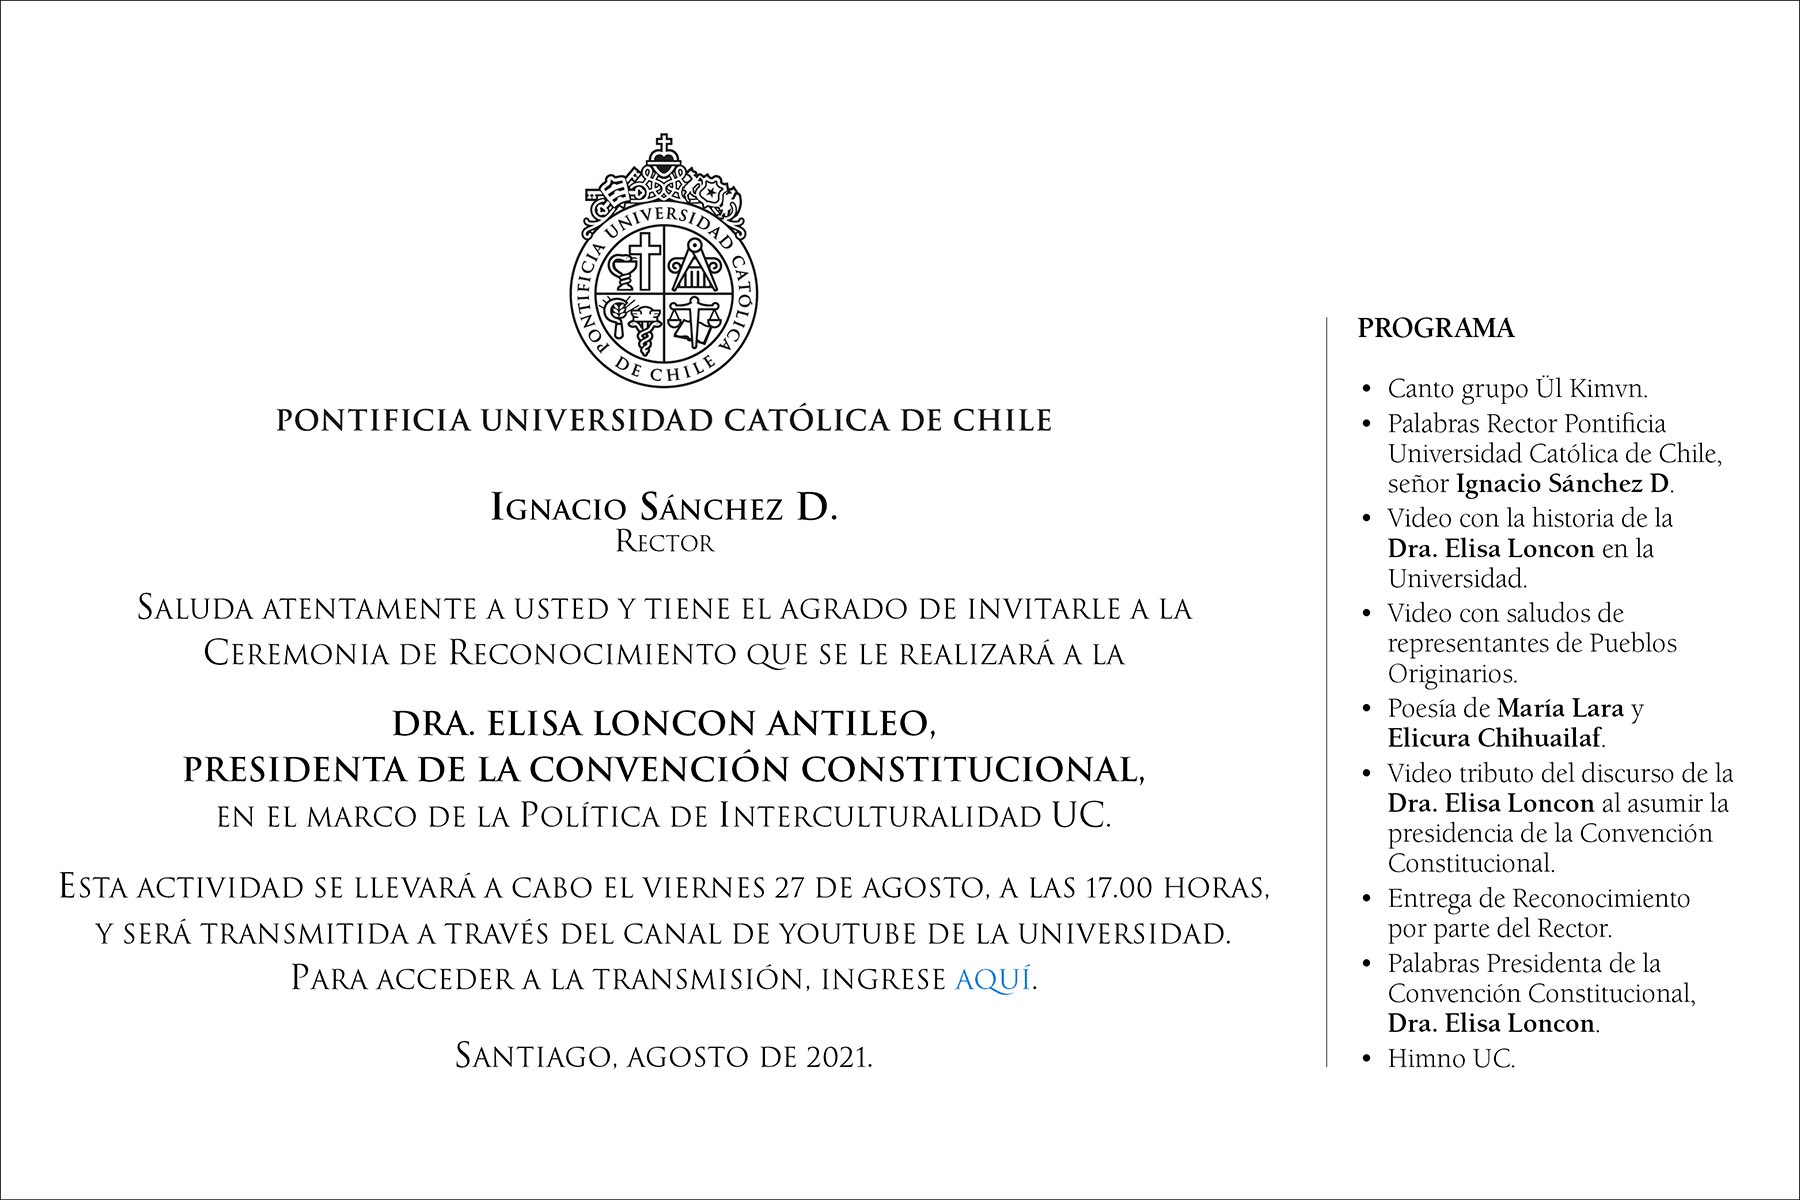 Pontificia Universidad Católica de Chile organiza ceremonia de reconocimiento para la presidenta de la Convención Constitucional